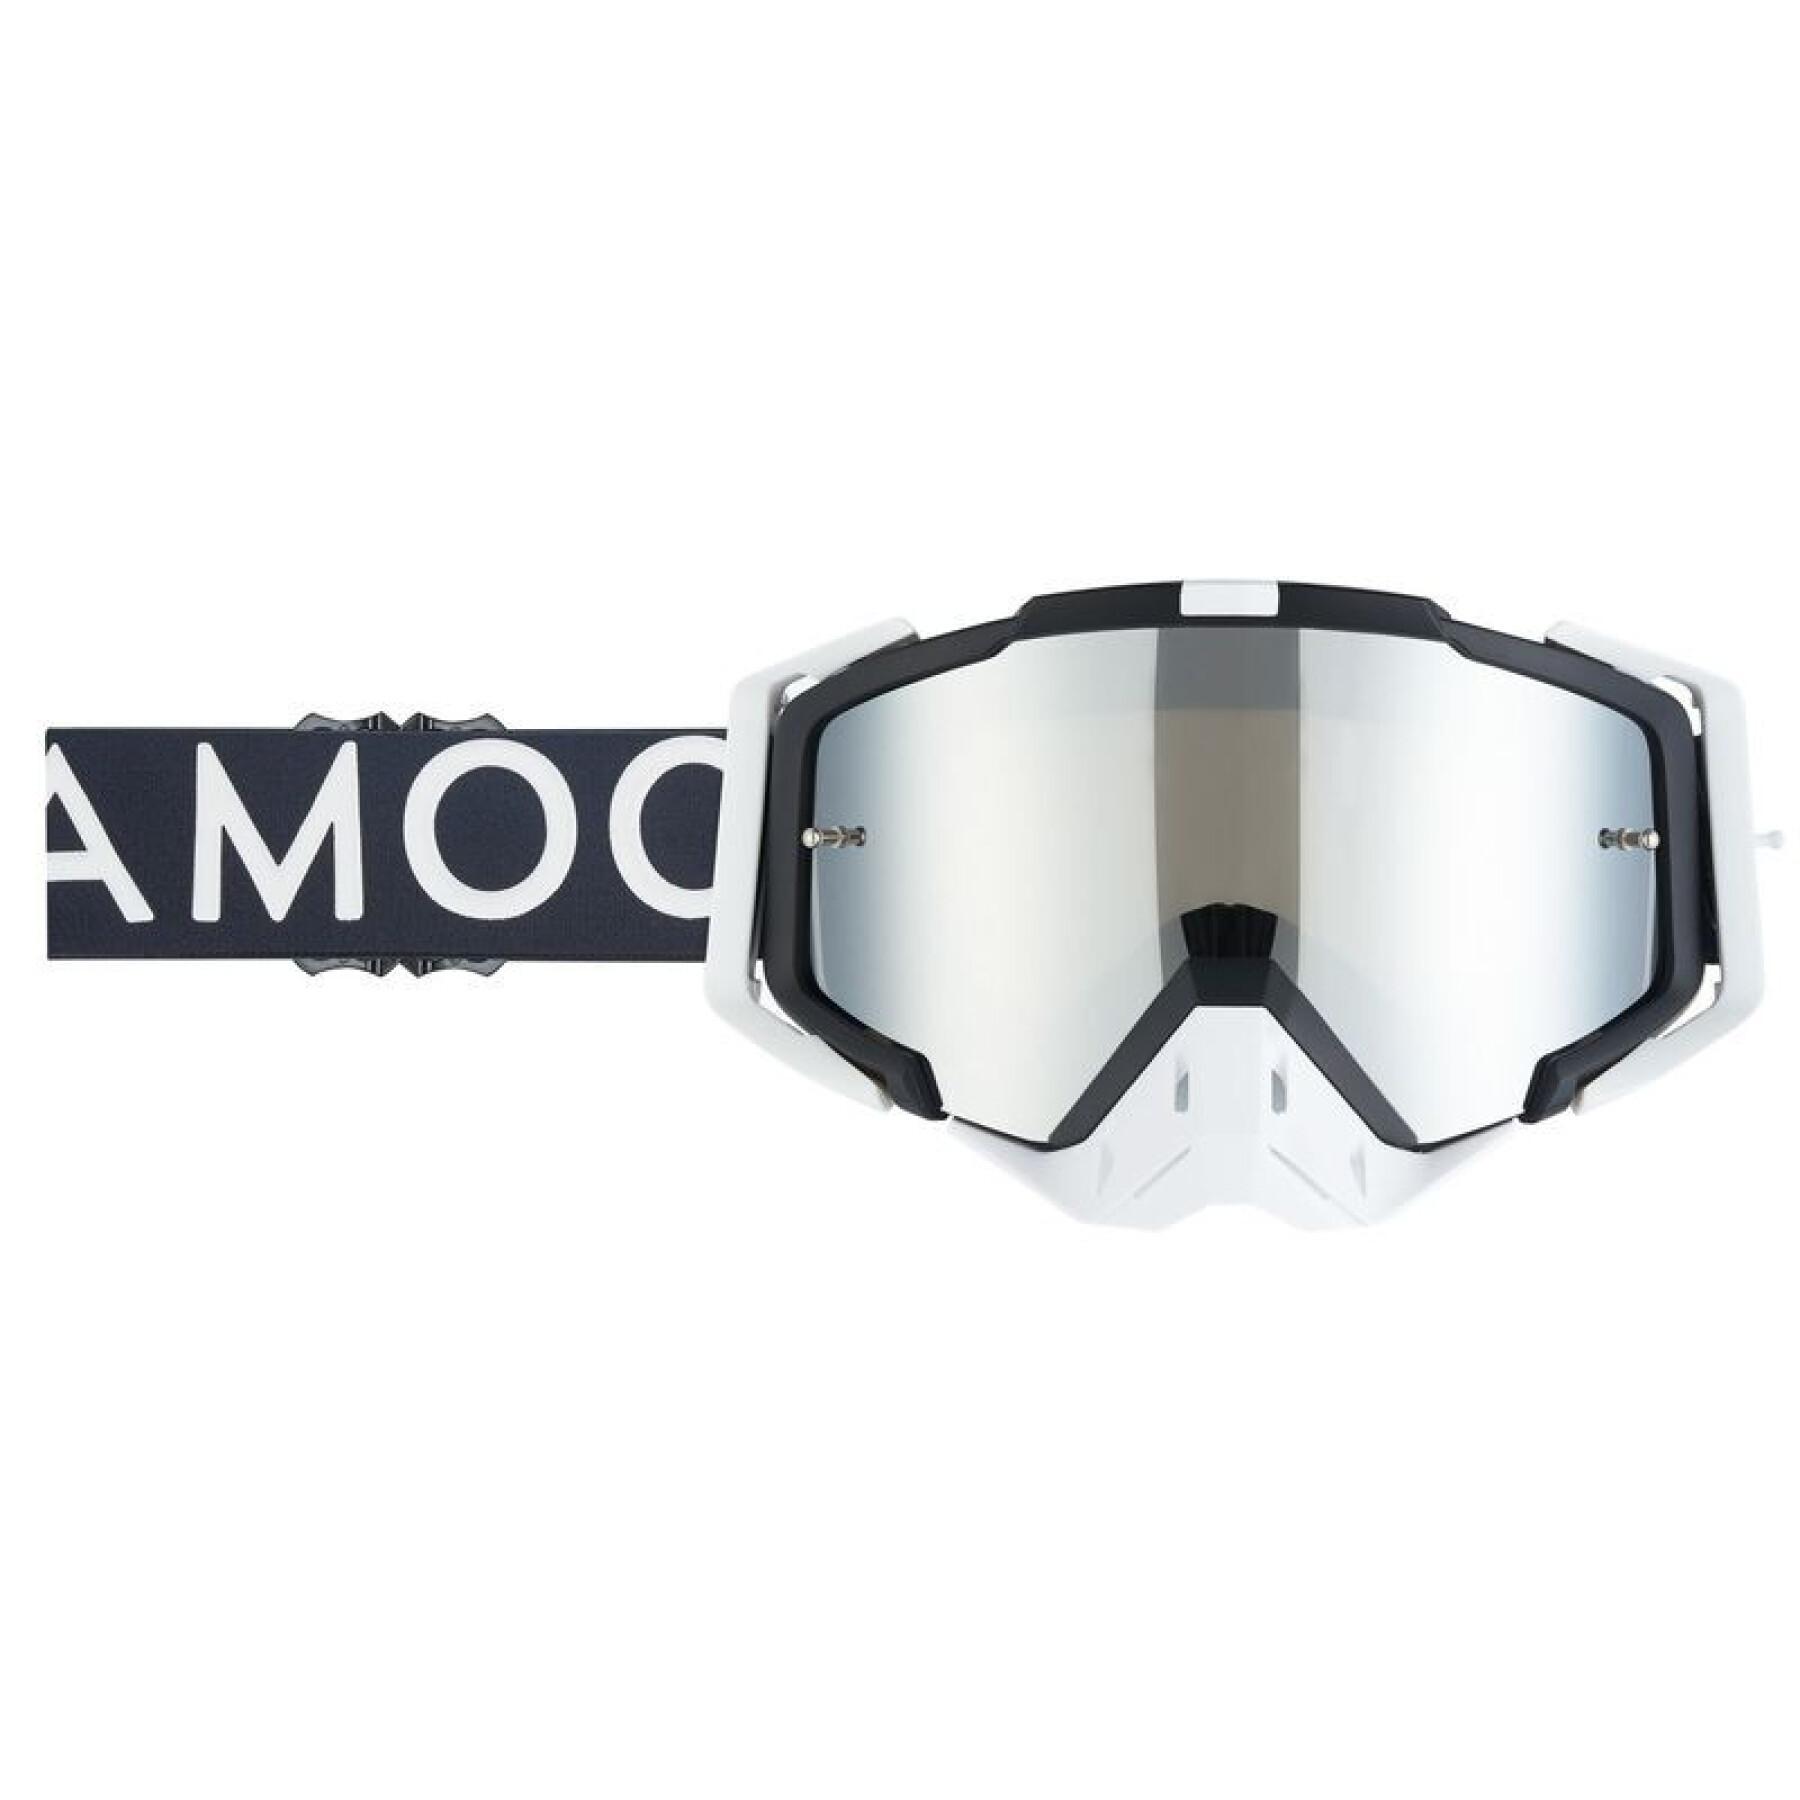 Motorcrossbril met zilveren spiegellens Amoq Aster